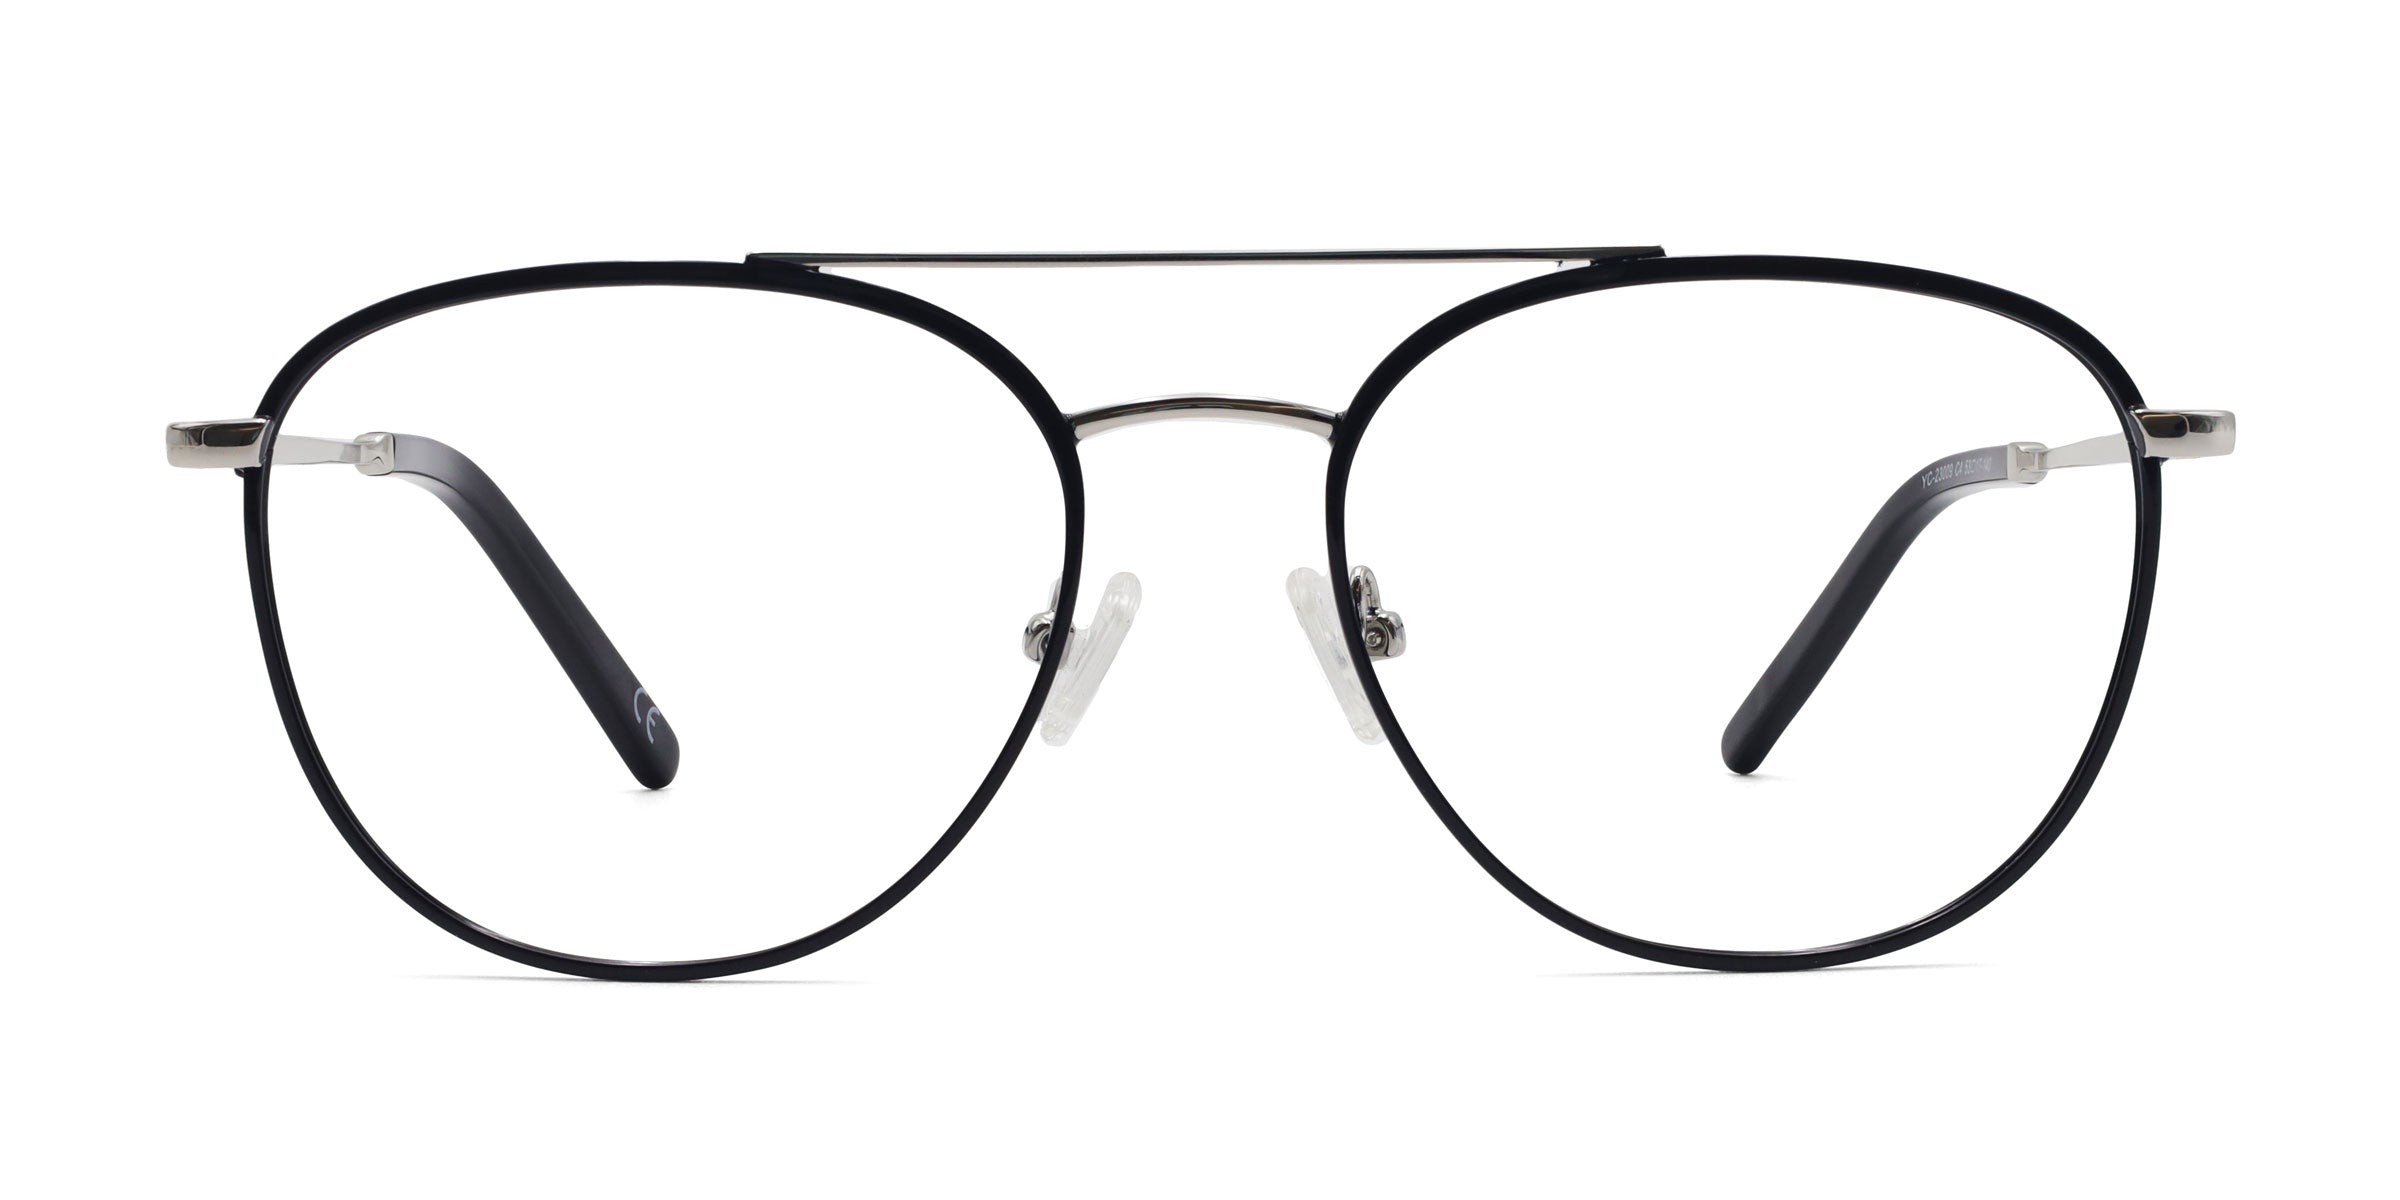 Kind Aviator Black eyeglasses frames front view